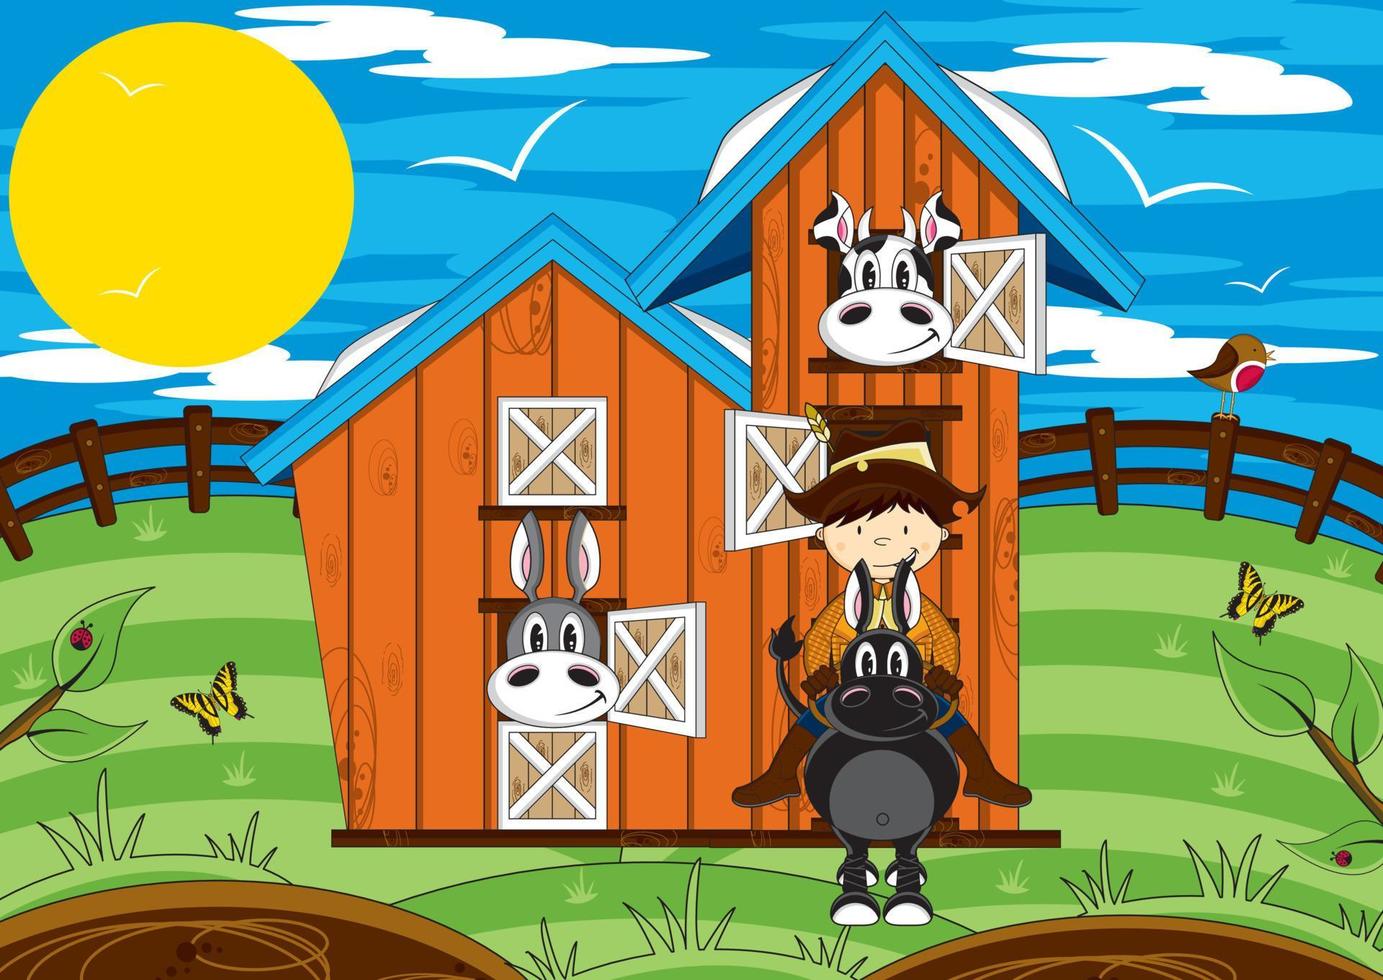 cartone animato contadino su cavallo con azienda agricola animali nel fienile illustrazione vettore